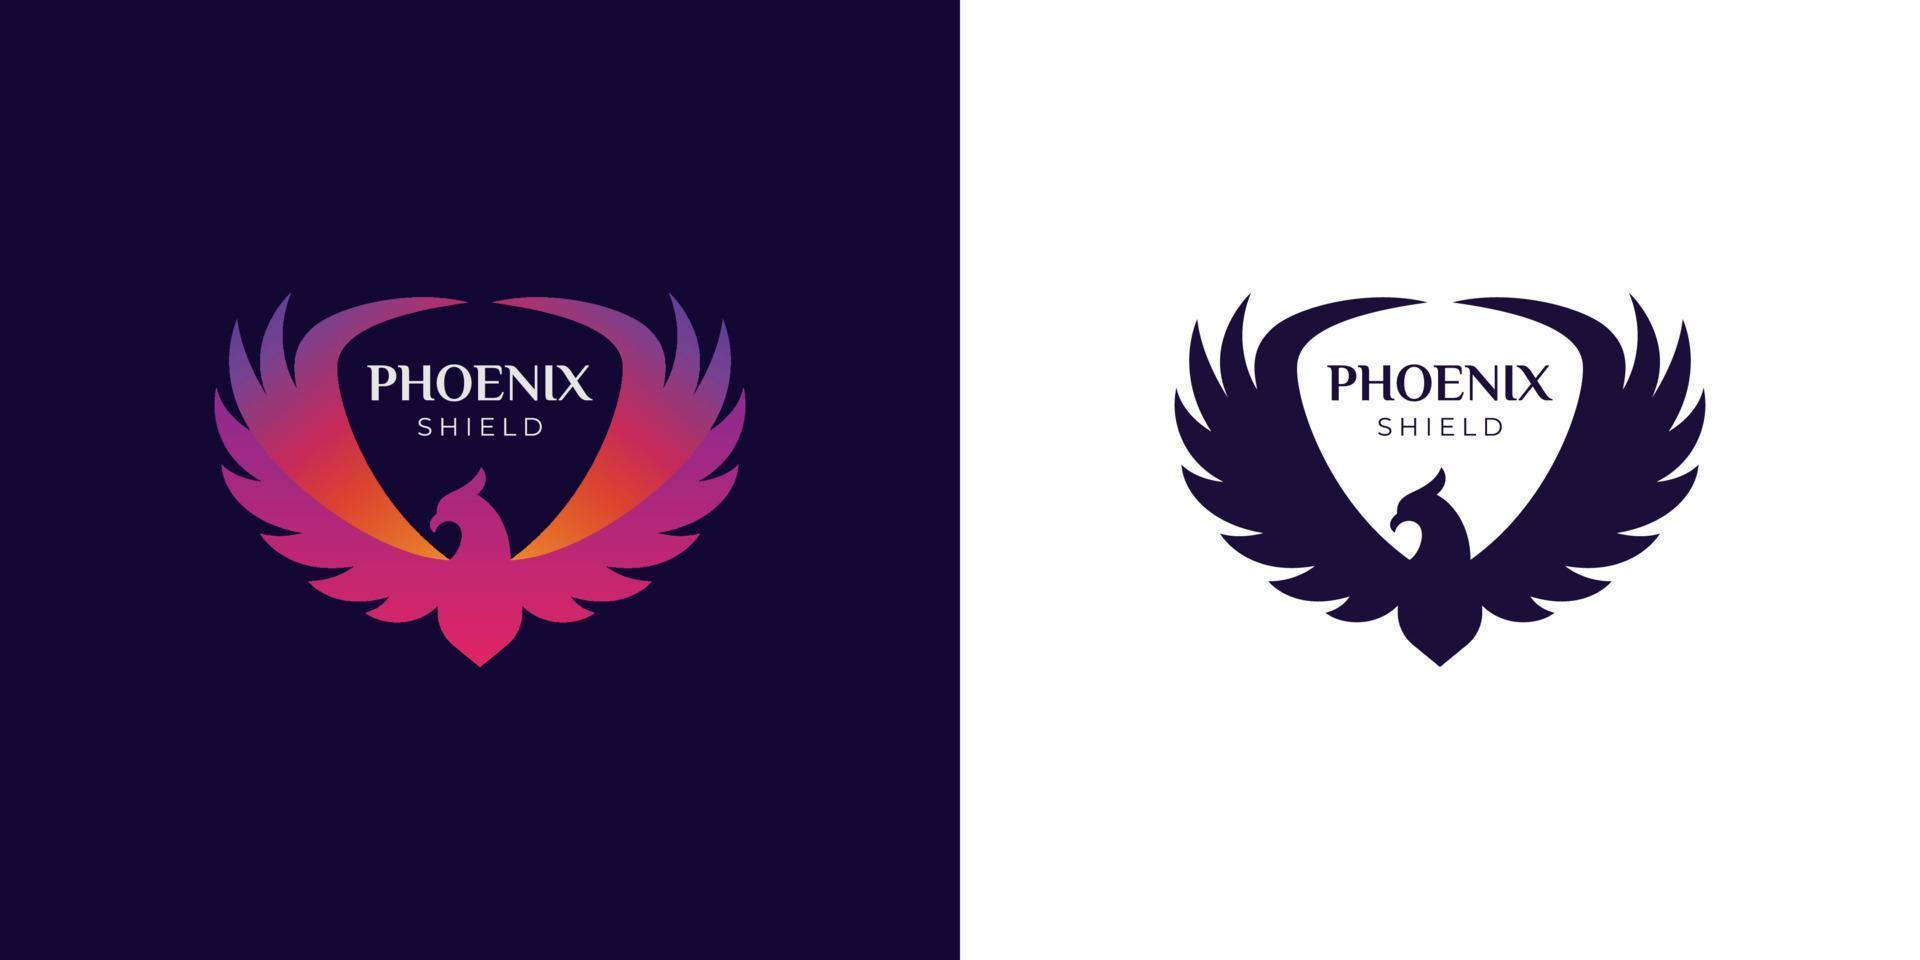 impresionante vuelo phoenix gradiente logo vector ilustración dos versiones